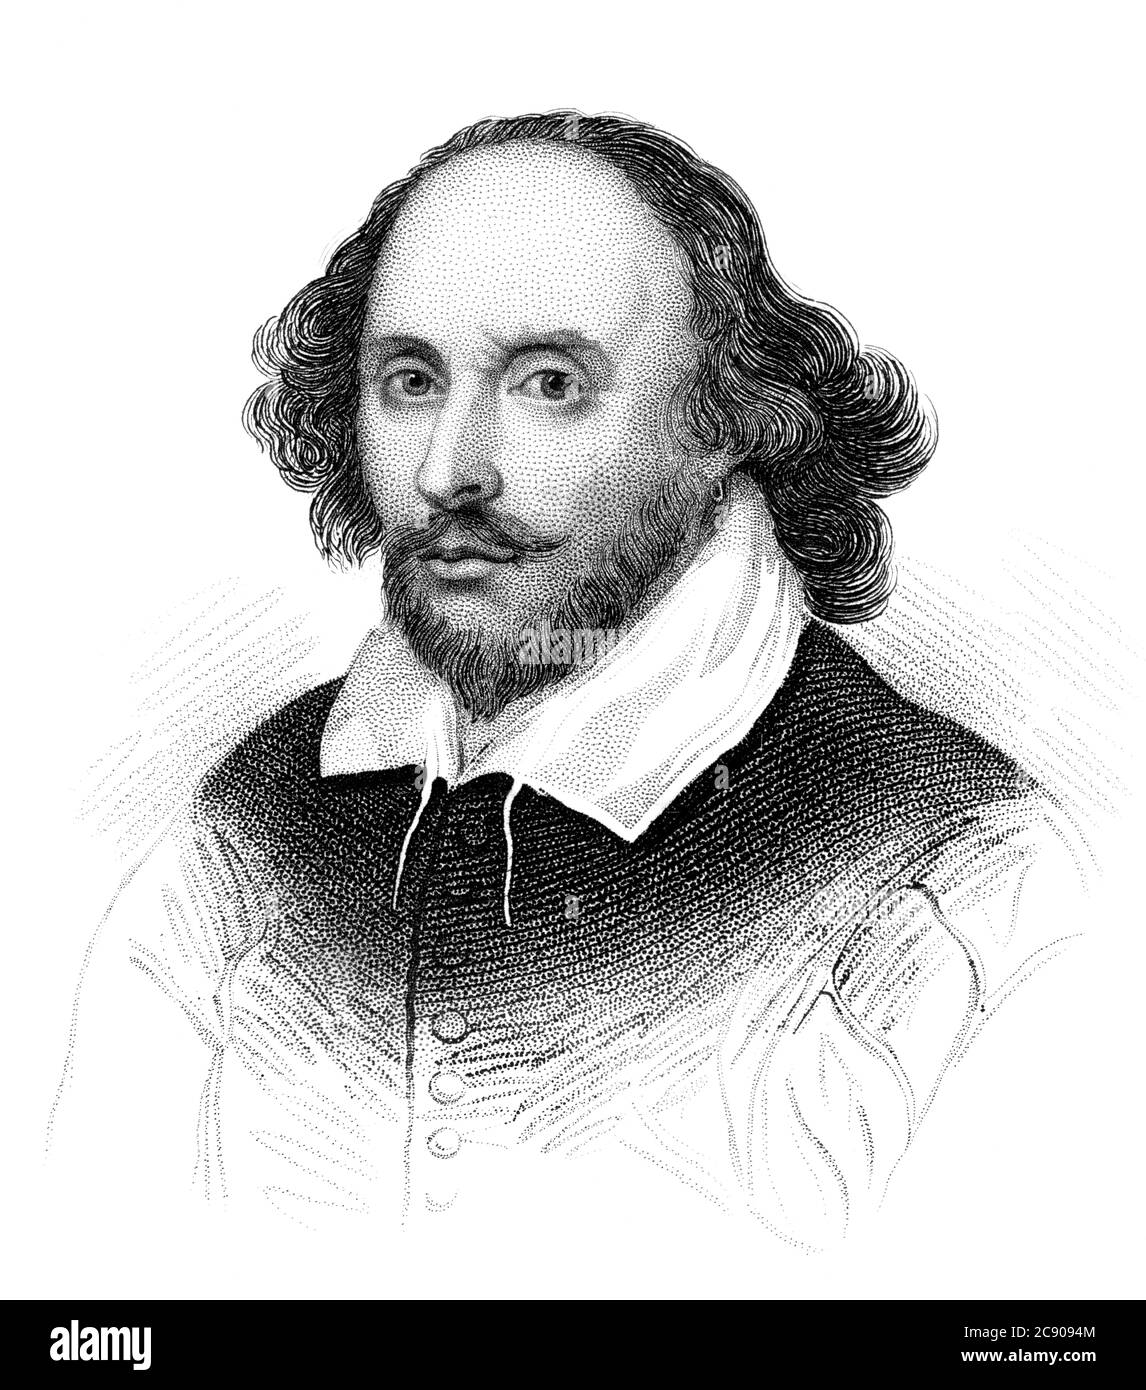 Un ritratto di illustrazione vintage inciso del drammaturgo elisabettiano William Shakespeare di Stratford Upon Avon, da un libro vittoriano datato 1847 t Foto Stock